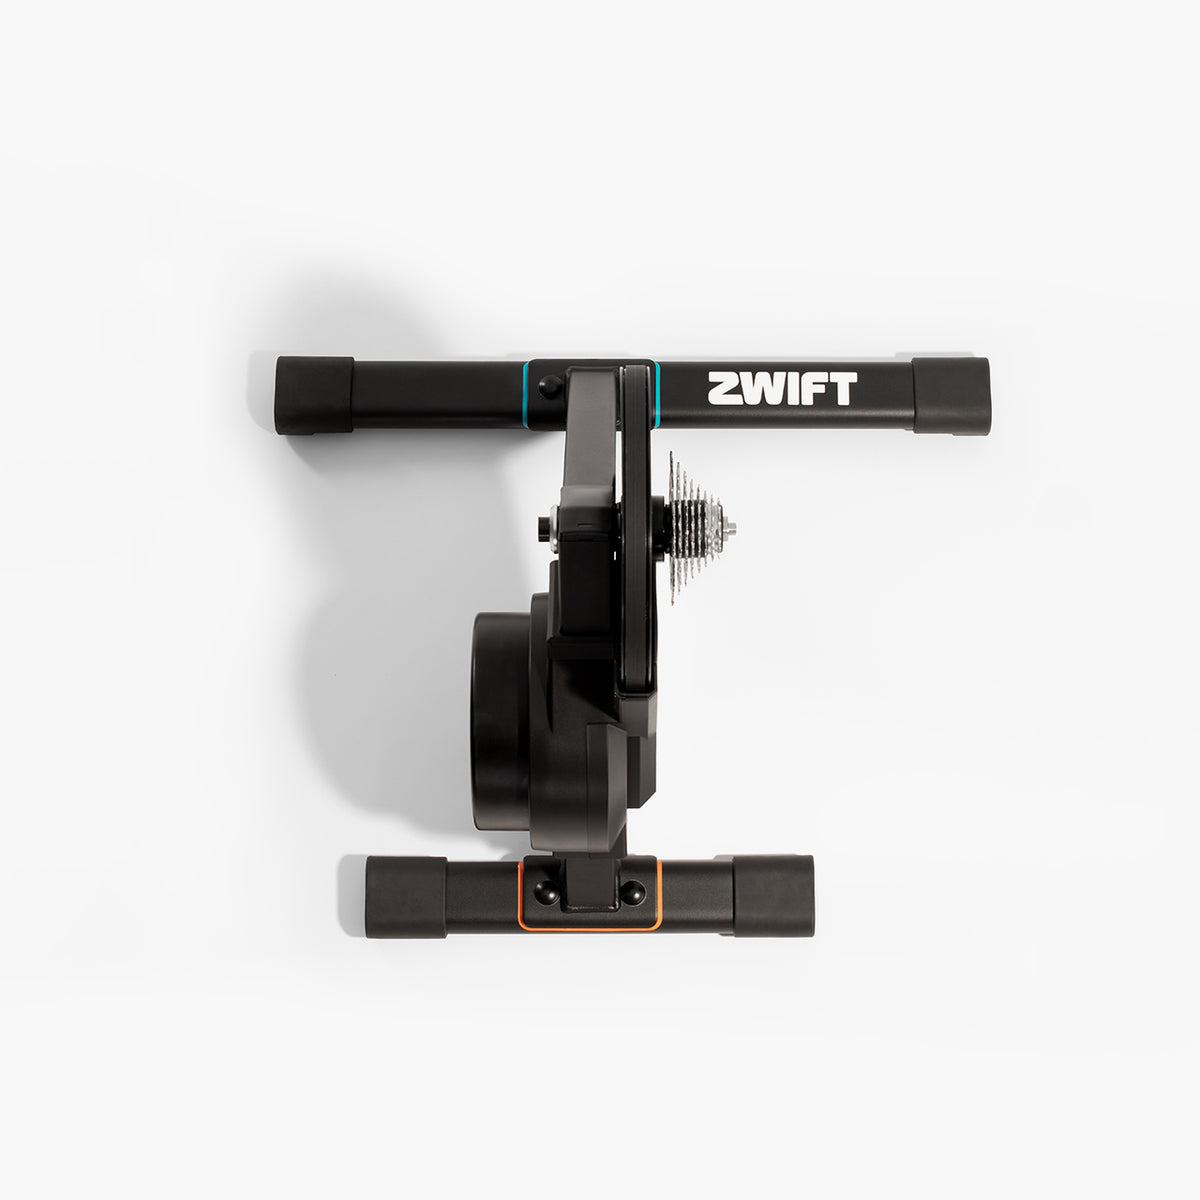 Rodillo inteligente Zwift Hub con cassette de 8 velocidades